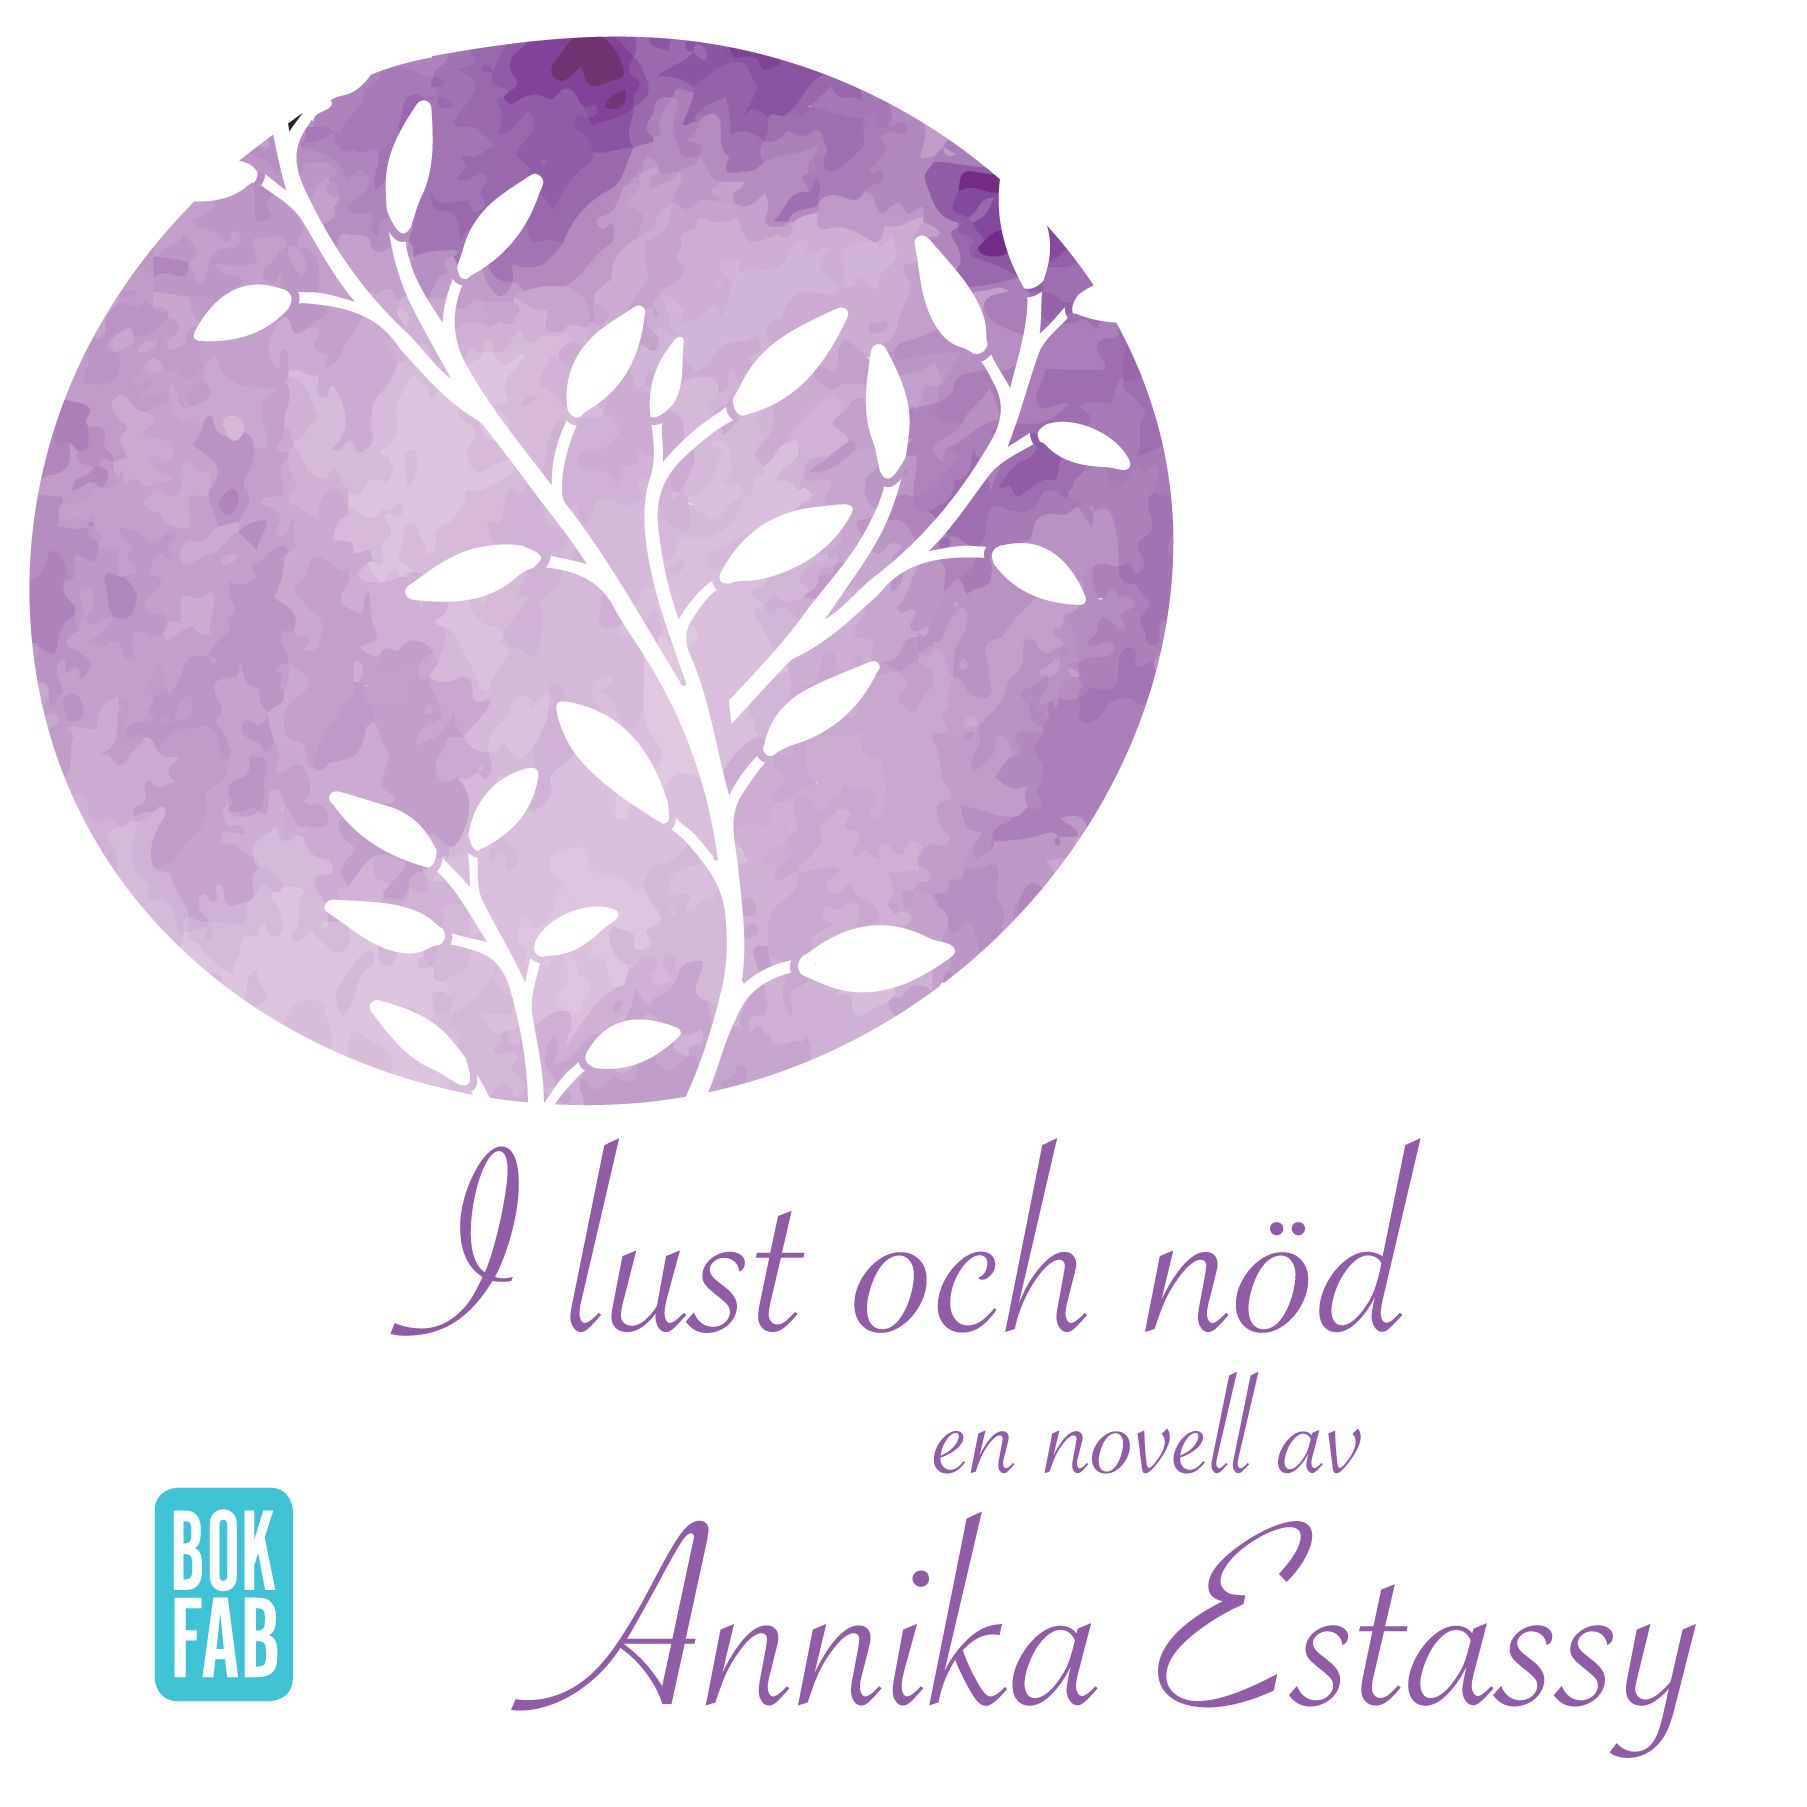 I lust och nöd, audiobook by Annika Estassy